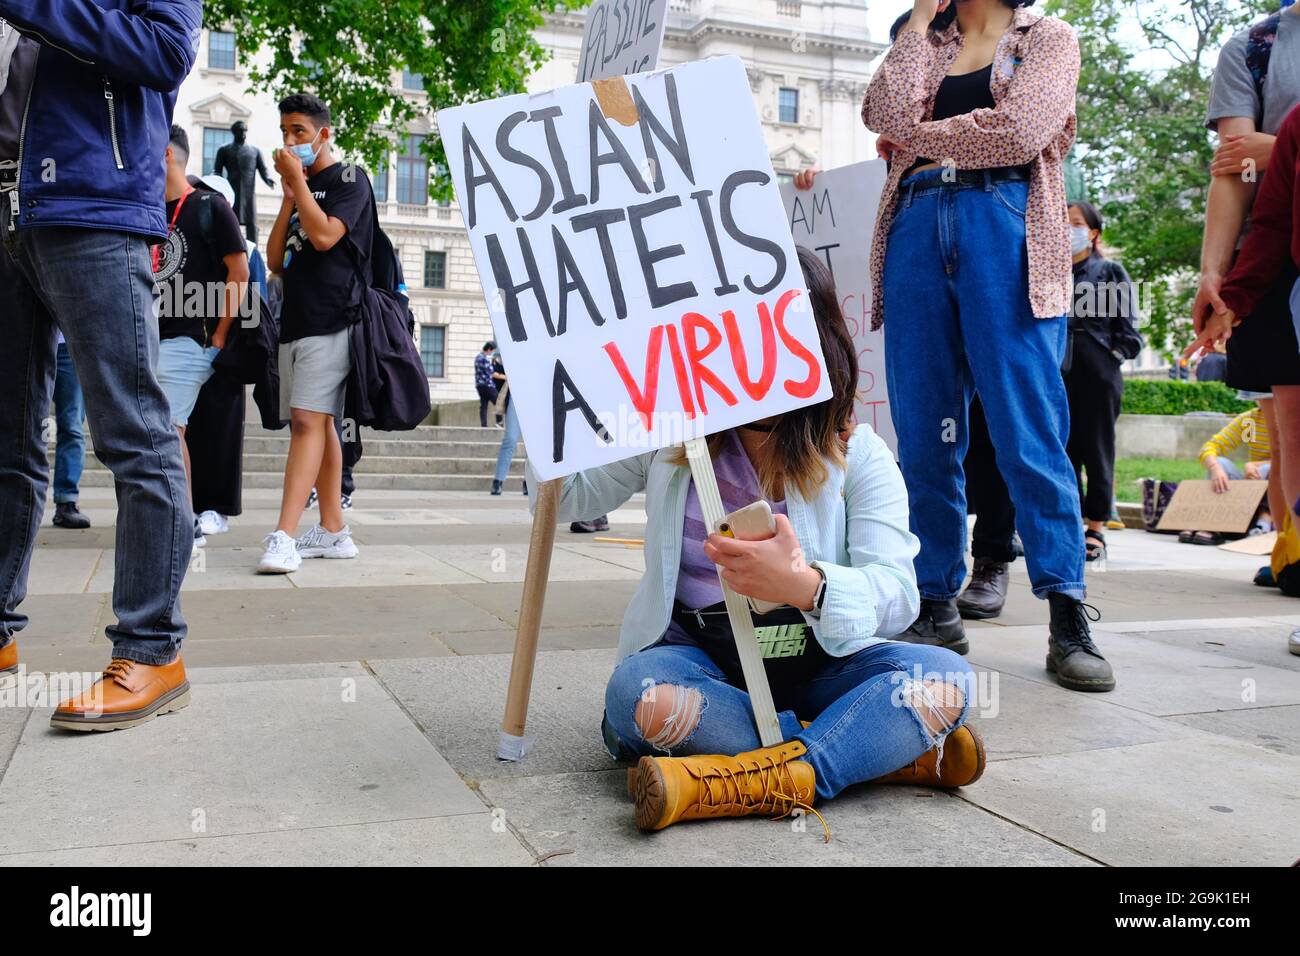 Ein Protestler hält ein Plakat auf einer Stop Asian Hate-Kundgebung hoch, da sich die Hassverbrechen im Verlauf der Pandemie in Großbritannien verdreifachen. Stockfoto